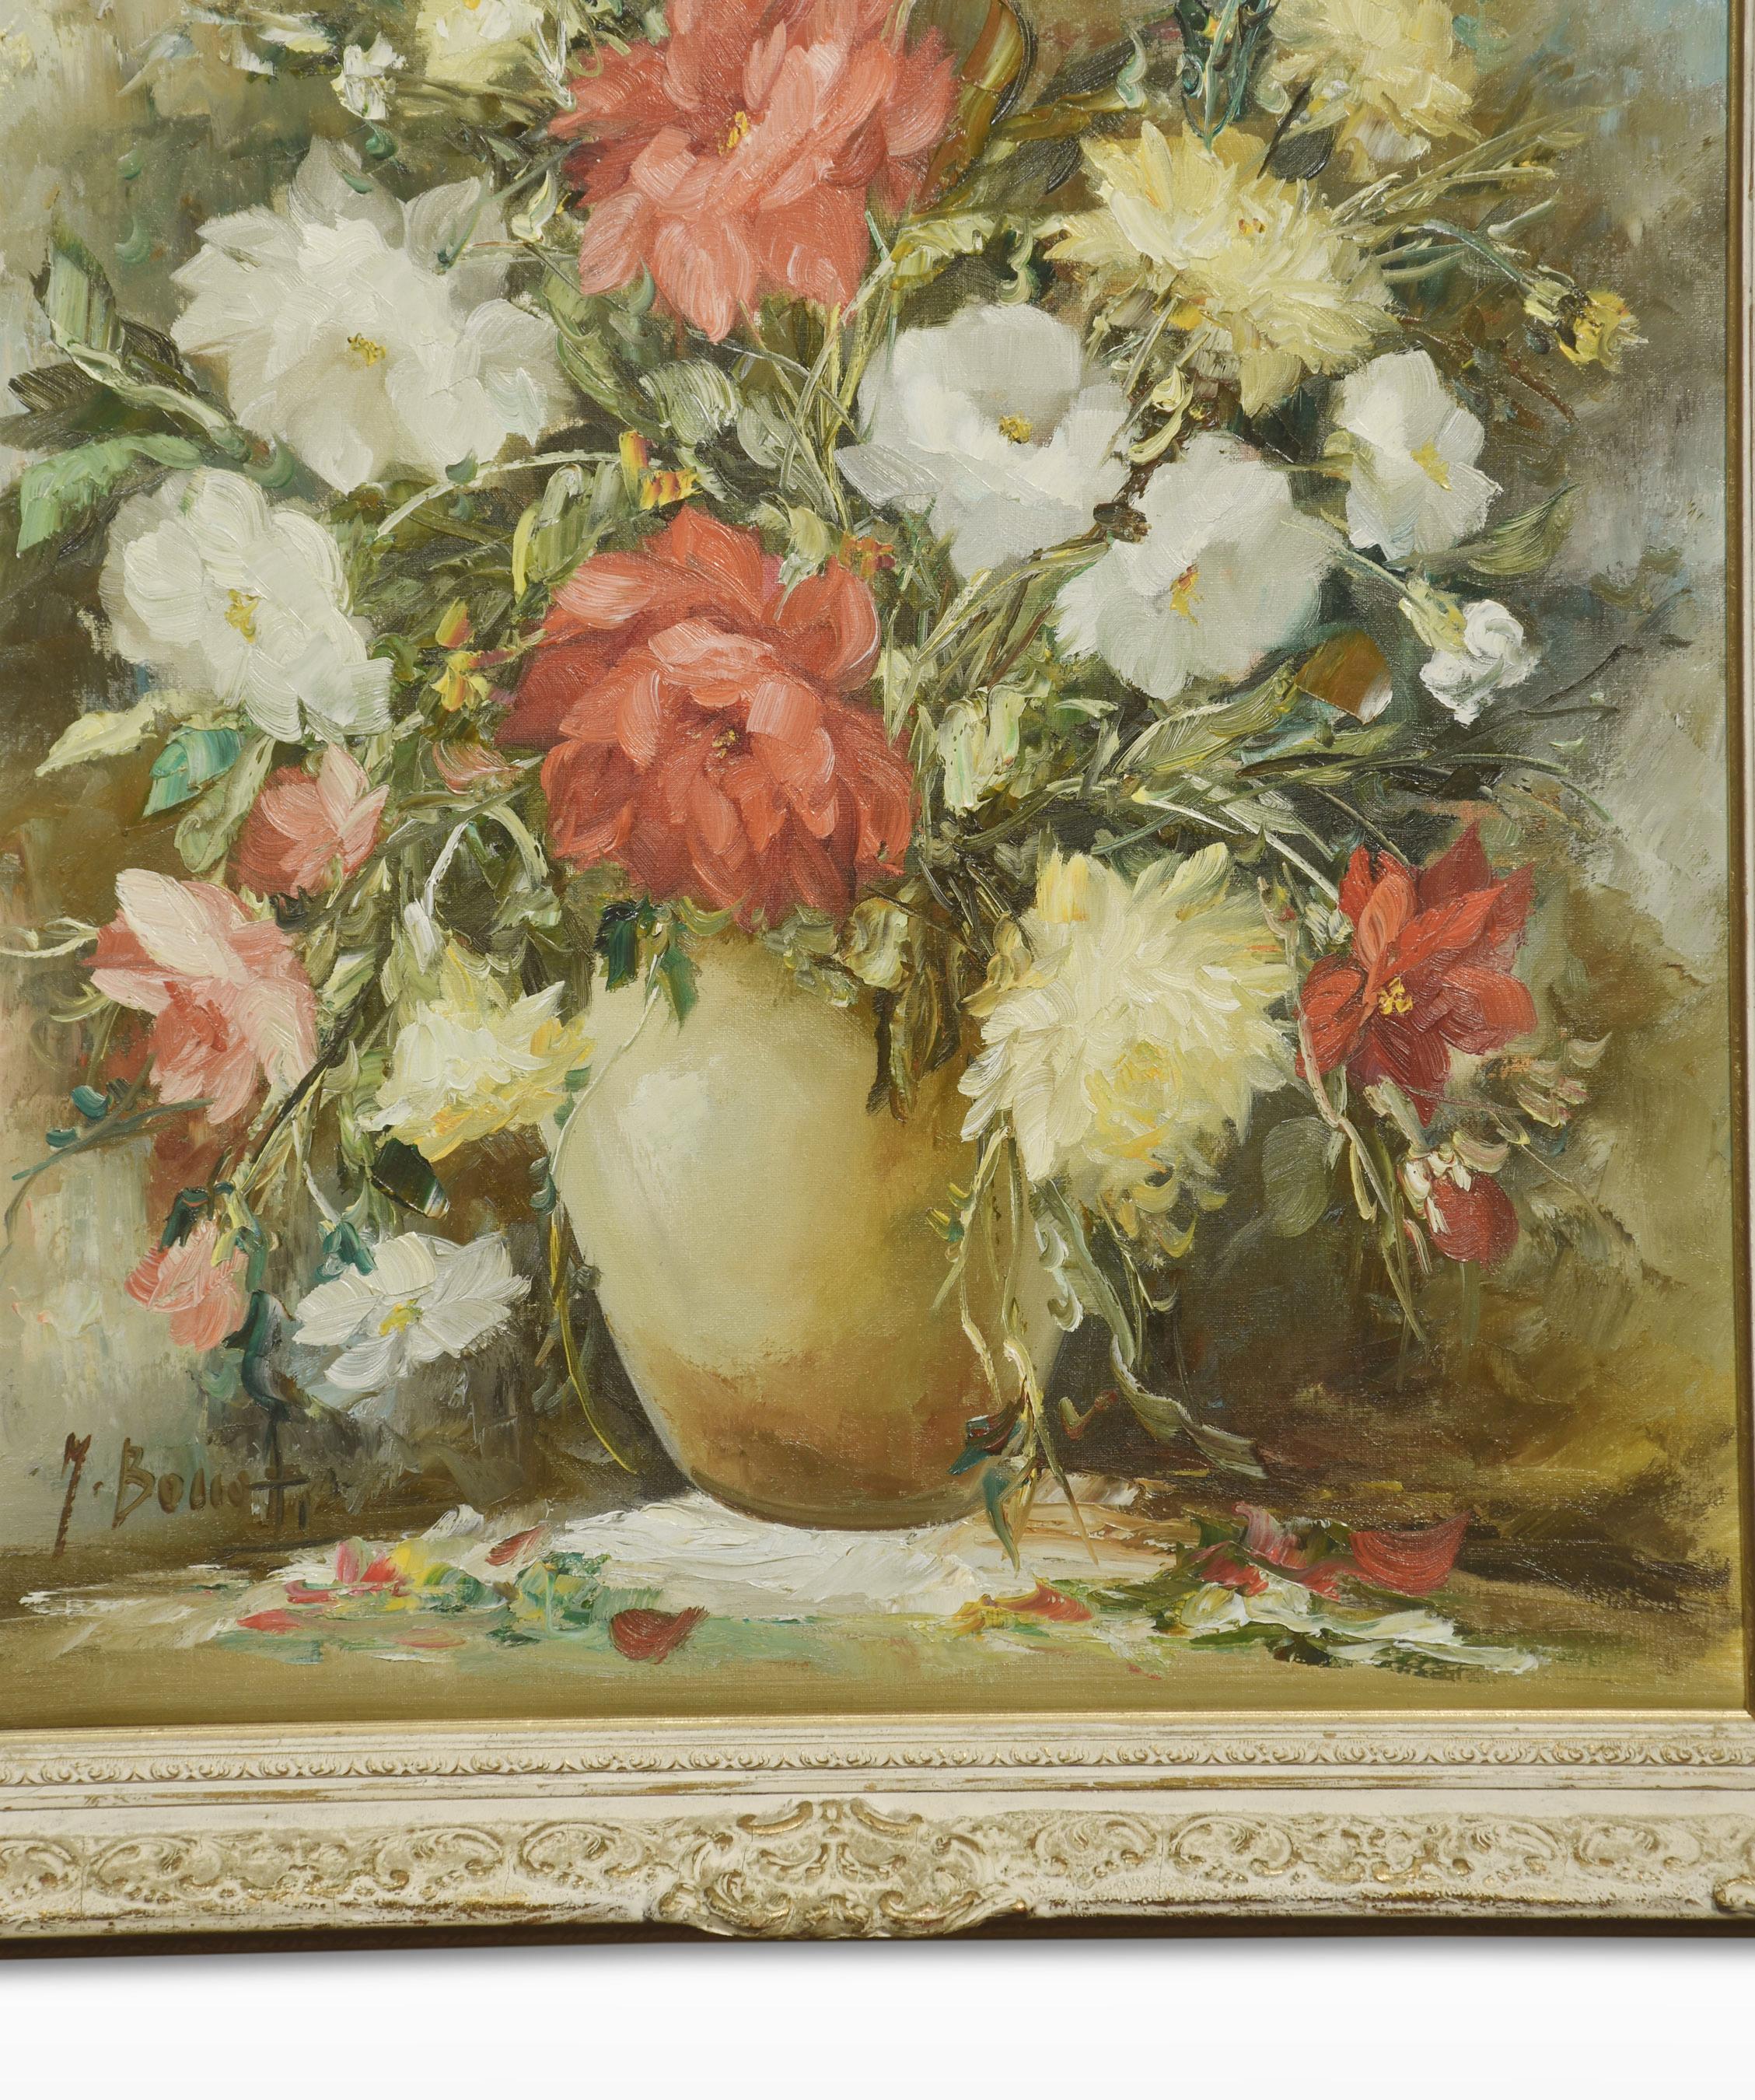 Nature morte aux fleurs dans un vase, huile sur toile, signée Manuela Bonati dans un cadre sculpté.
Dimensions
Hauteur 28 pouces
Largeur 24 pouces
Profondeur 2 pouces